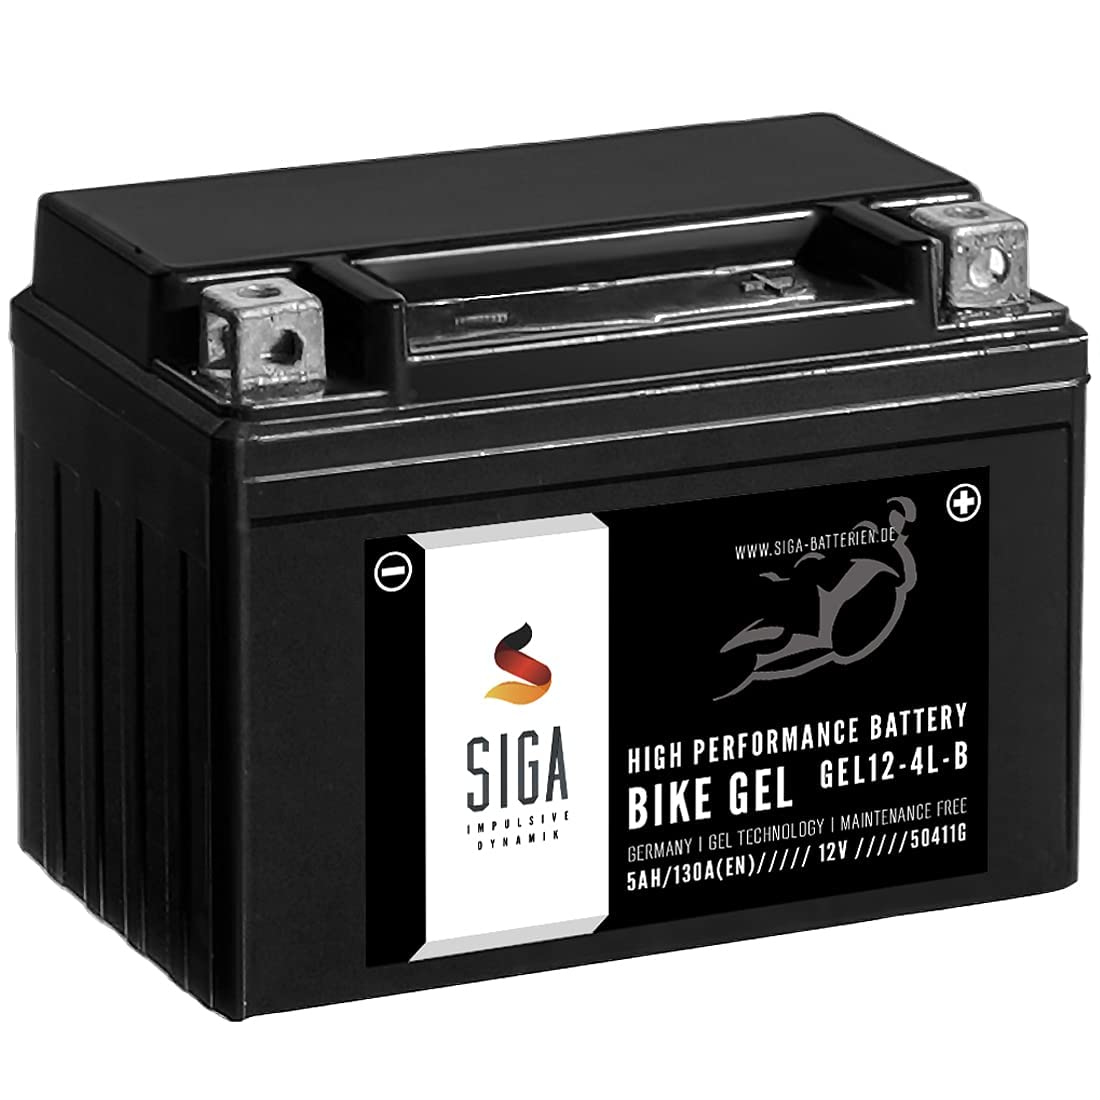 SIGA GEL Motorradbatterie 12V 5Ah 130A/EN GEL Batterie YB4L-B CB4L-B 50411 YB4L-B Gel12-4L-B von SIGA IMPULSIVE DYNAMIK